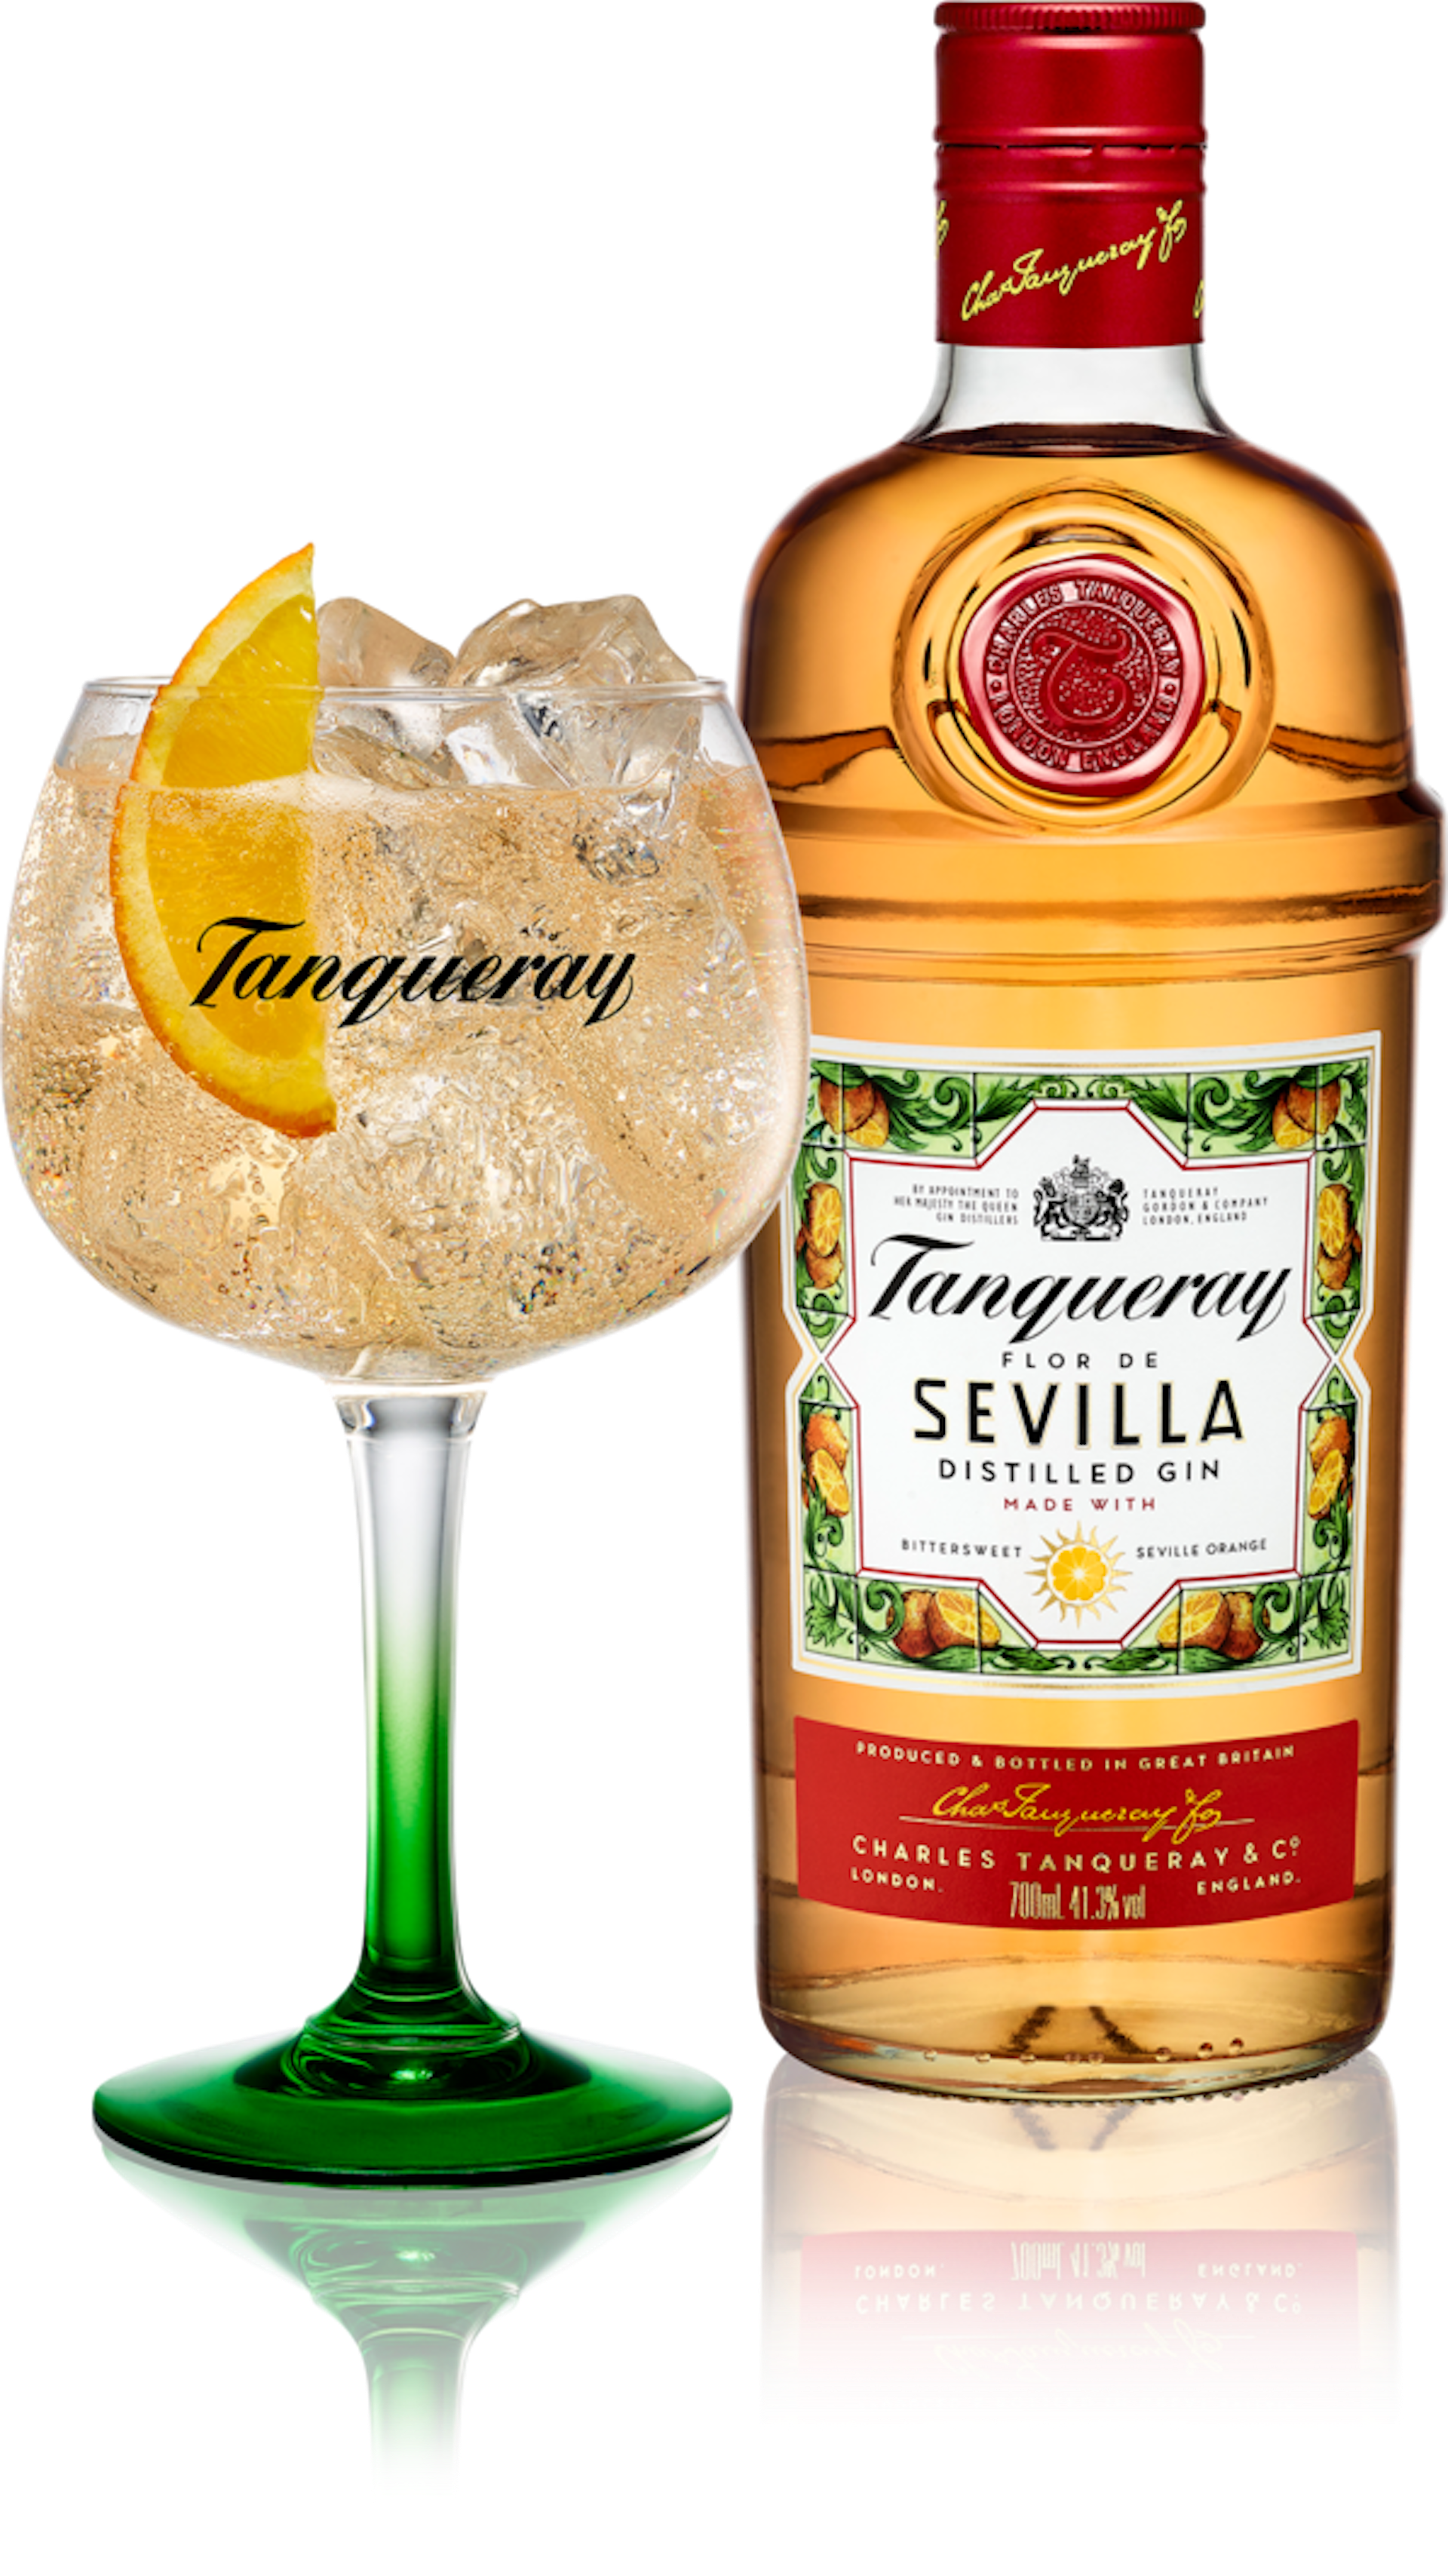 Travel News - 1Tanqueray Flor de Sevilla gin